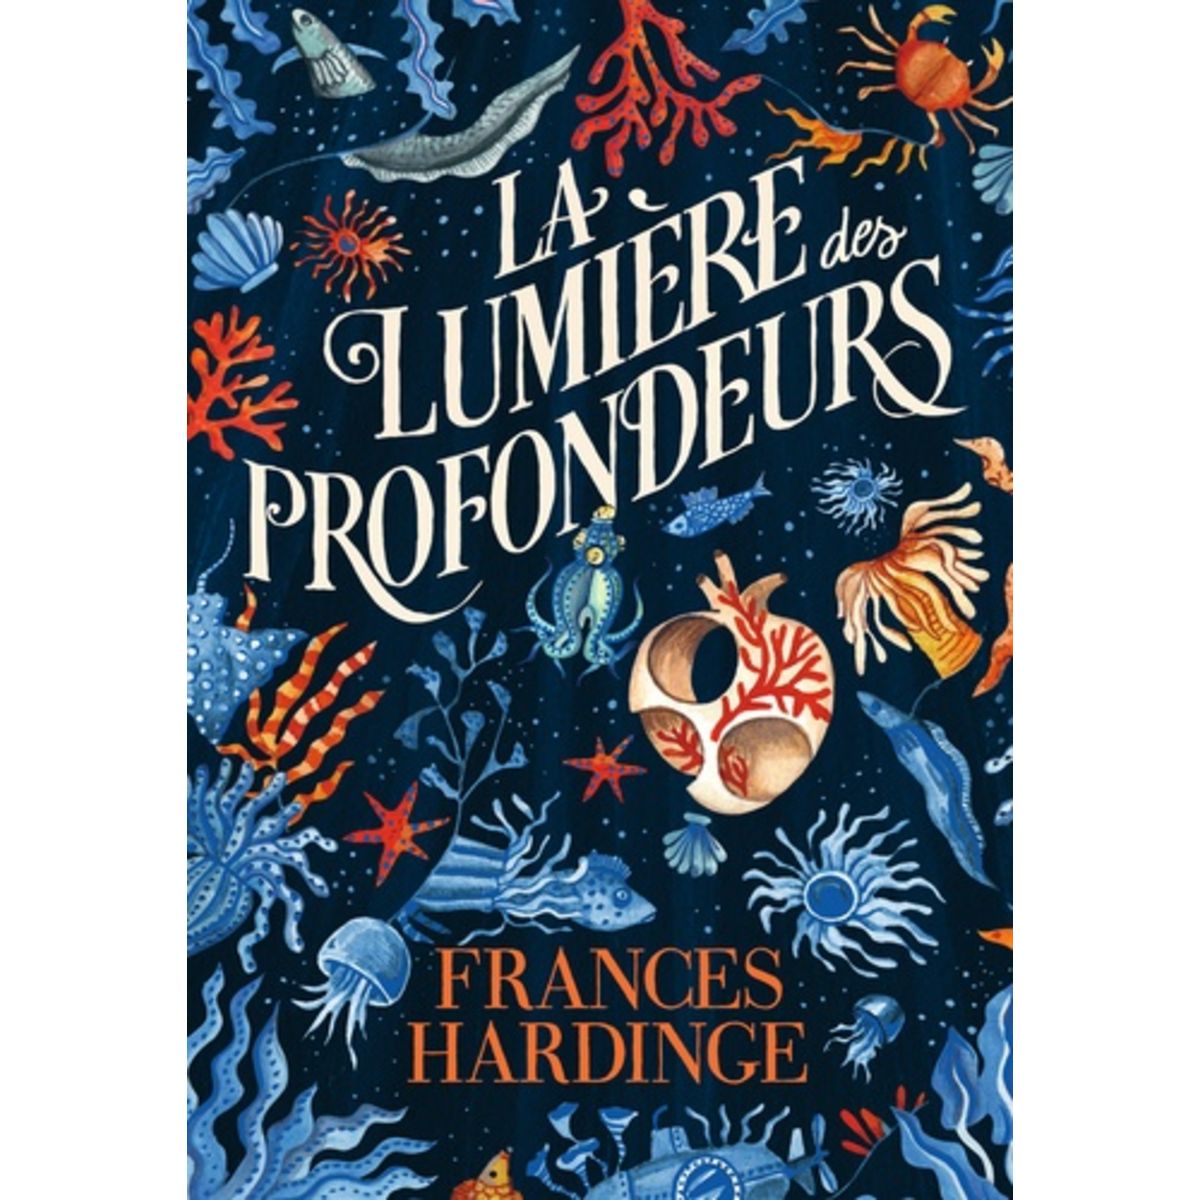  LA LUMIERE DES PROFONDEURS, Hardinge Frances